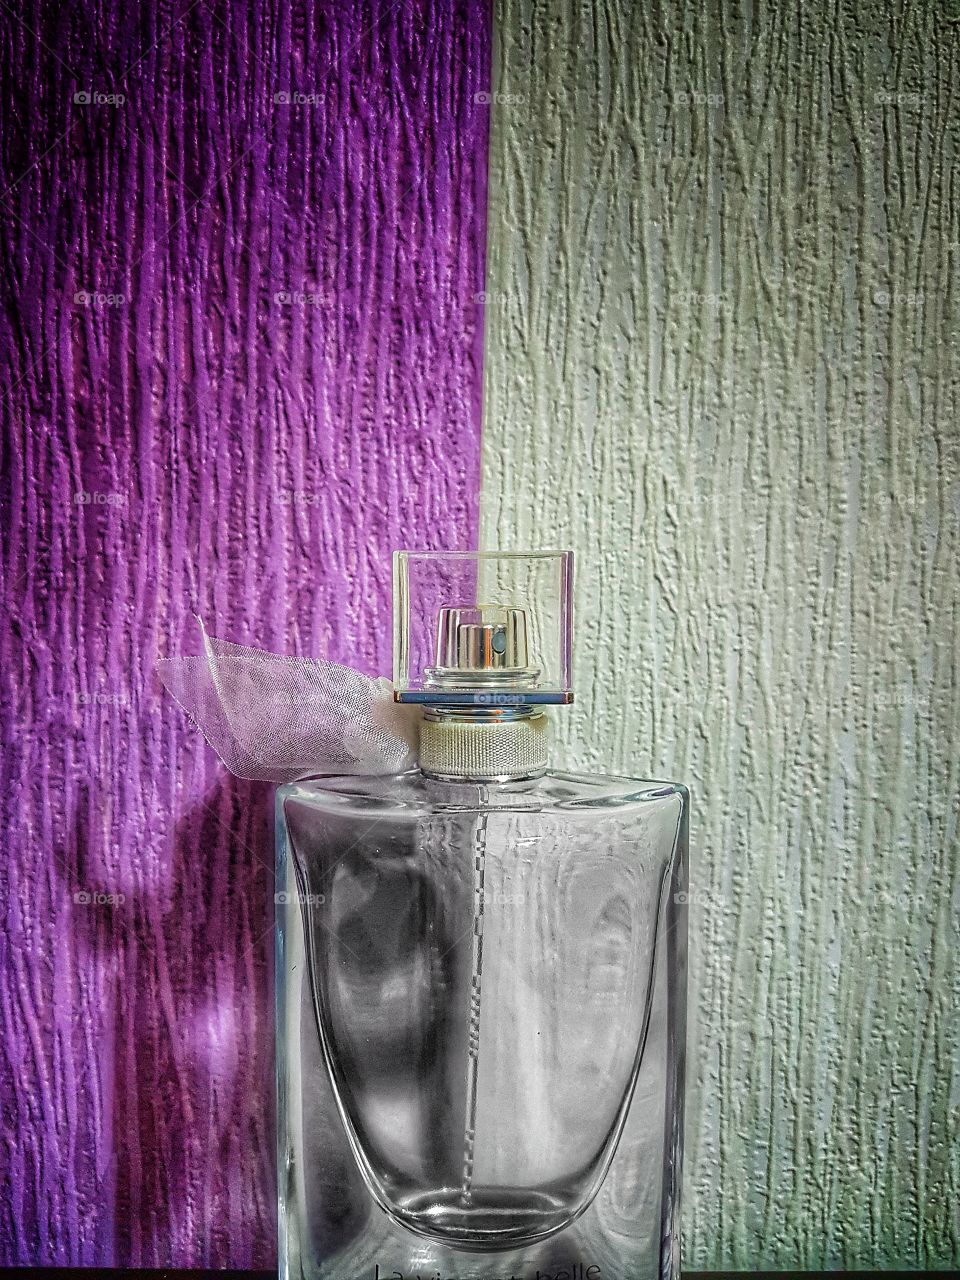 Perfume bottle beside wall